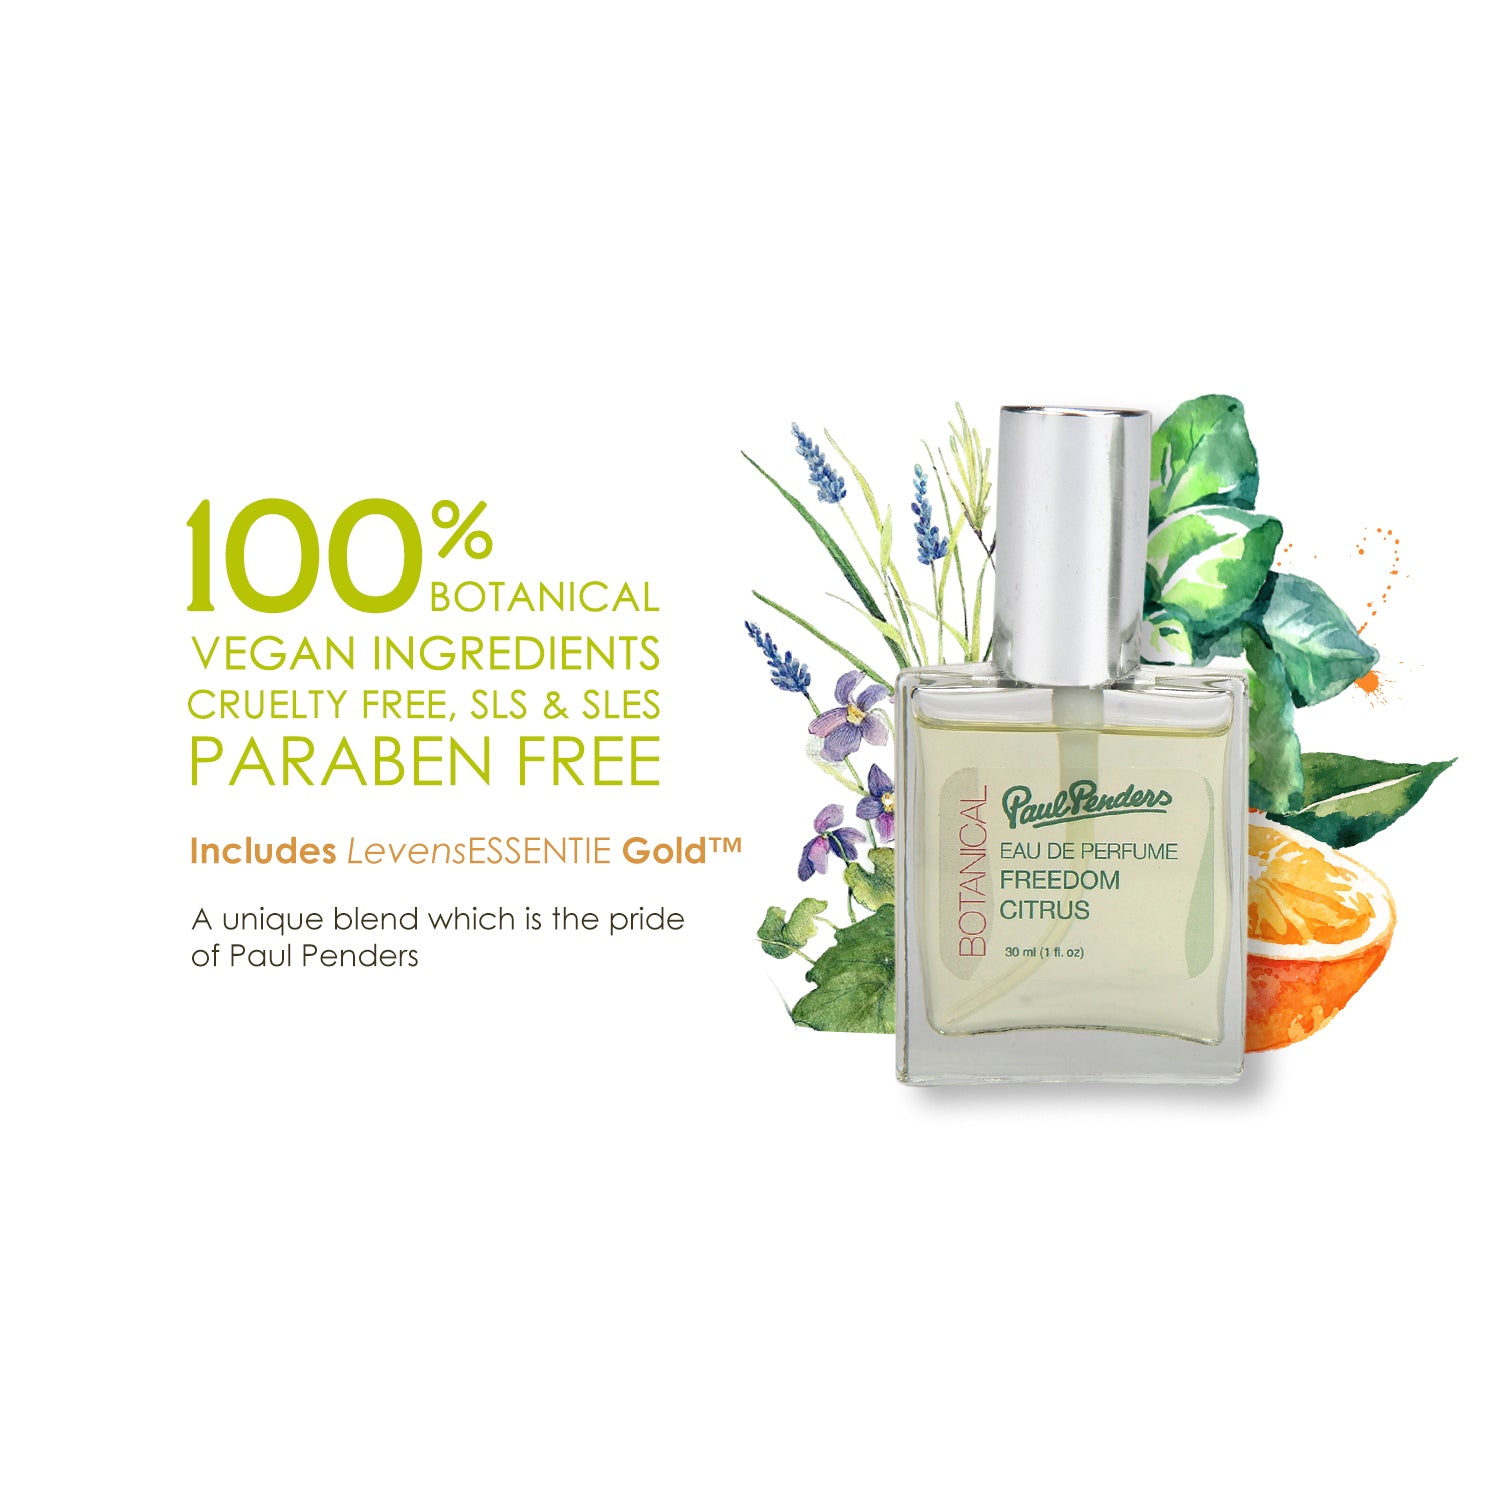 Eau De Perfum Freedom | Fruity Citrus & Fresh Floral Notes-30ml